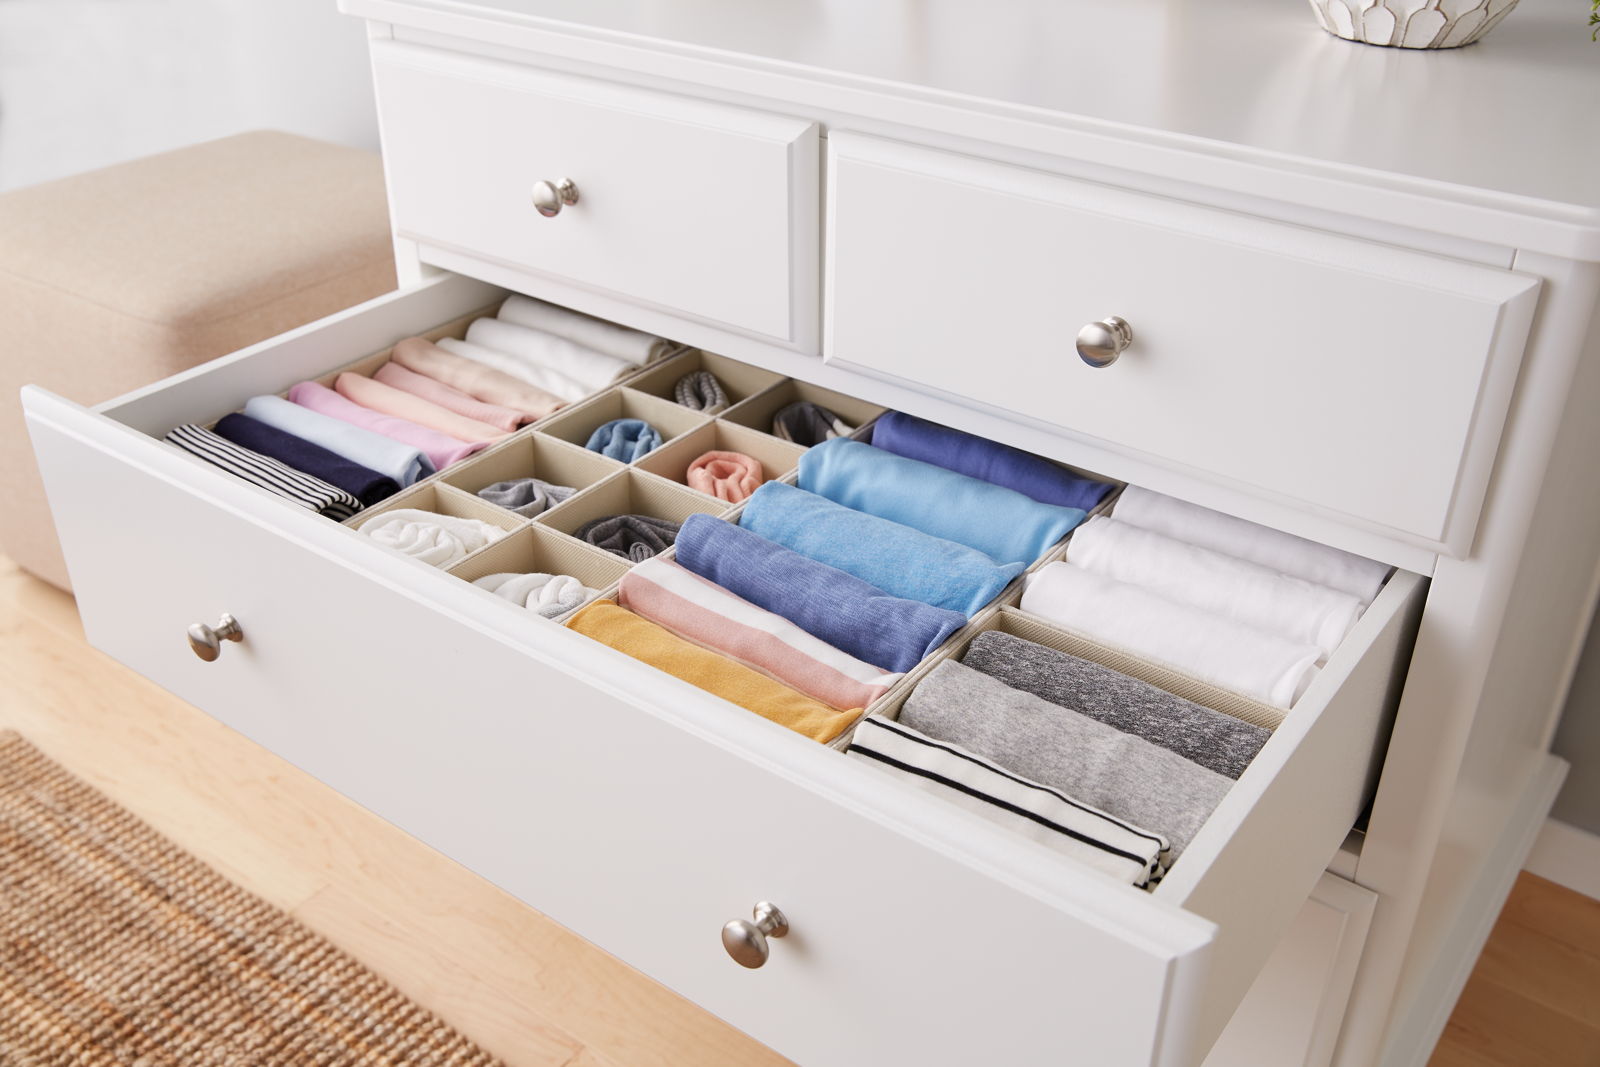 Đi qua tủ quần áo của bạn và chọn lấy một ngăn kéo, lấy mọi thứ ra để phân loại và sắp xếp chúng một cách gọn gàng, khoa học.